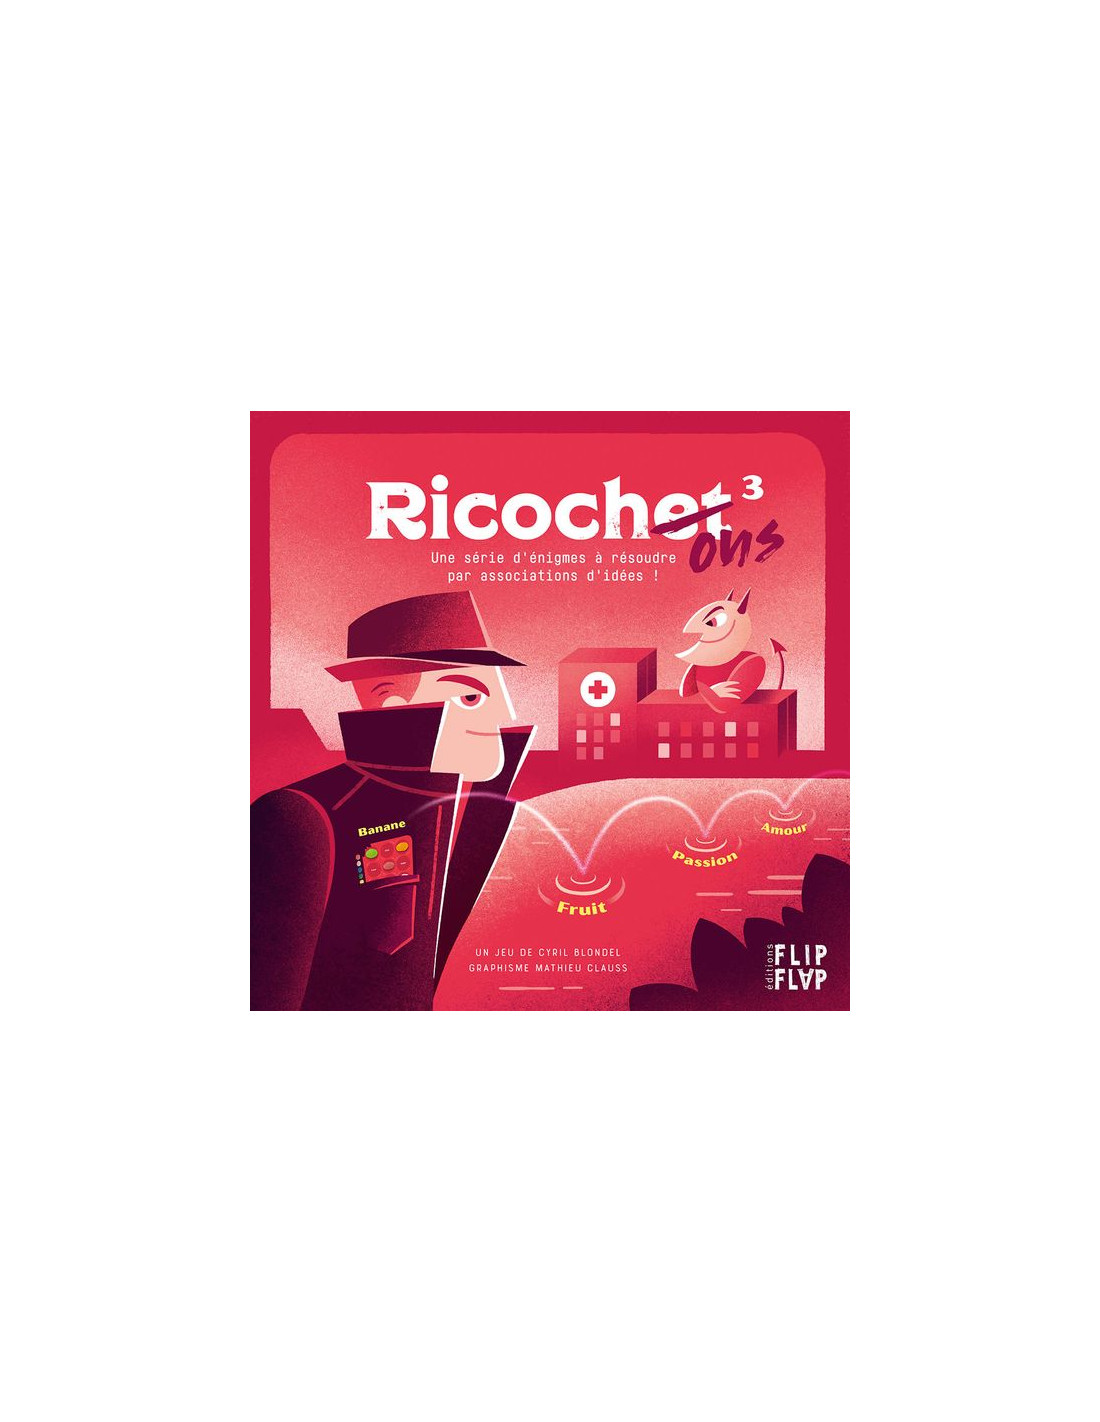 jeu-ricochet-3-ricochons